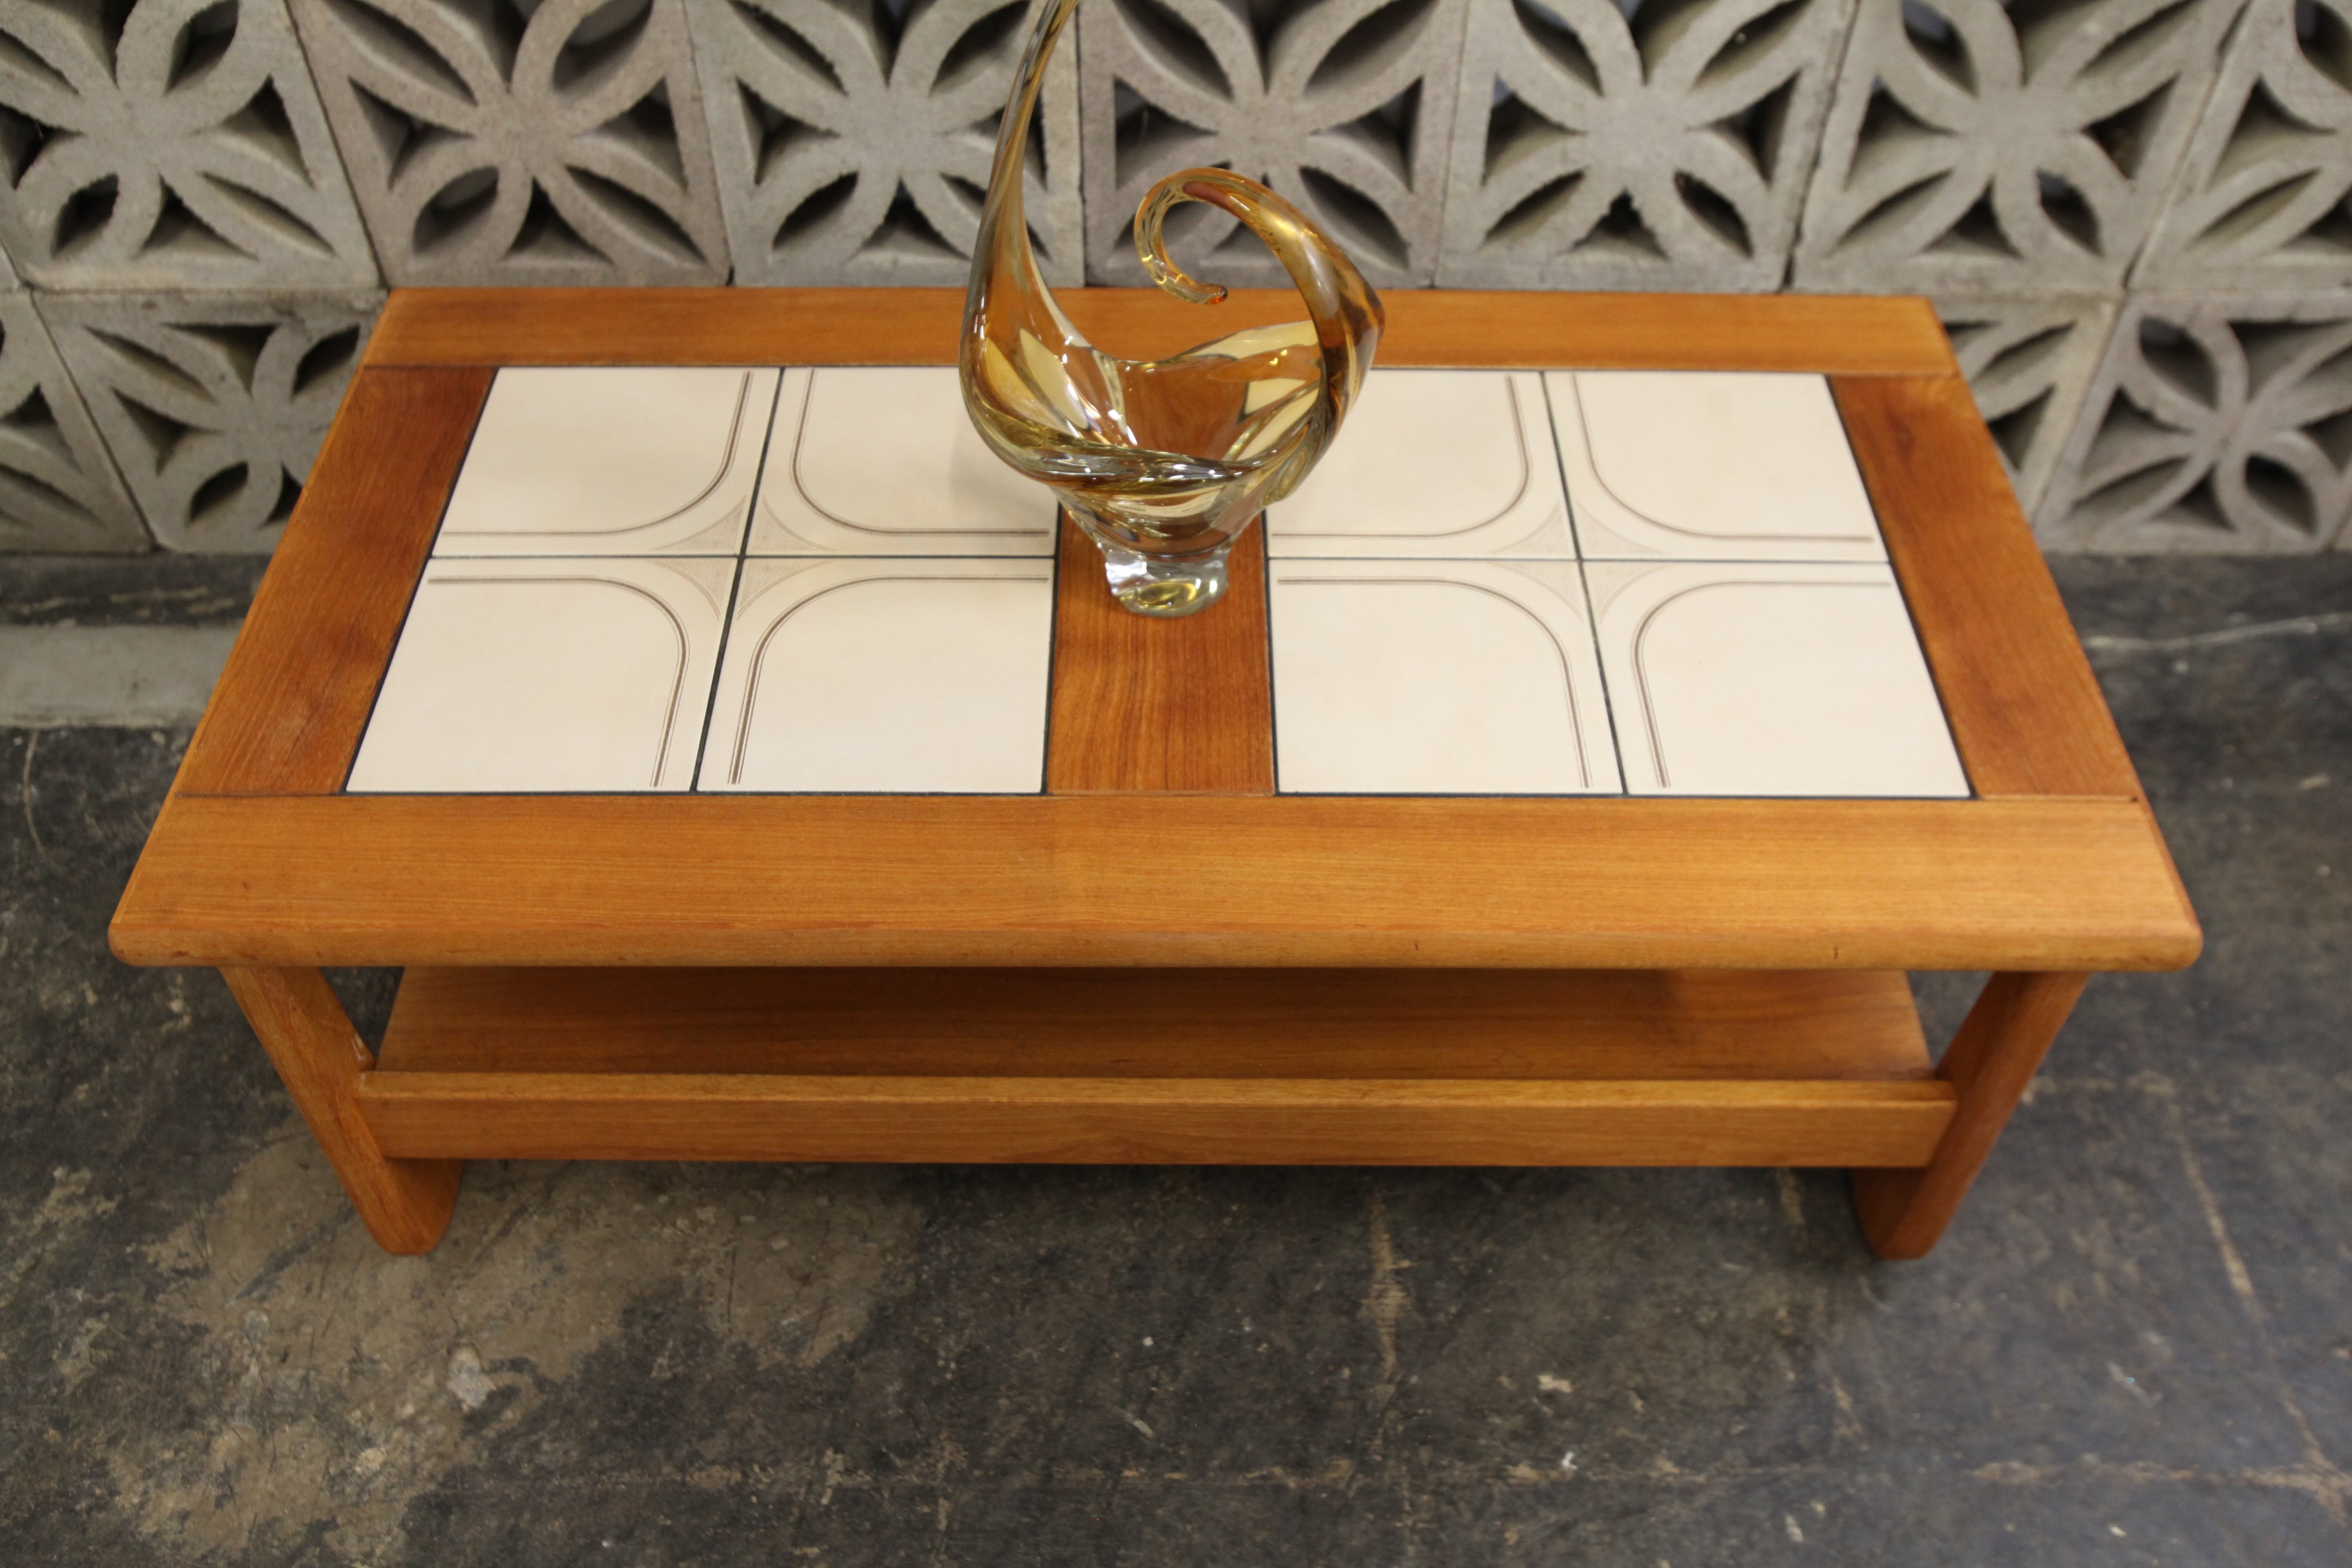 Vintage Teak & Tile Coffee Table (45.25"L x 24.25"W x 16.75"H)